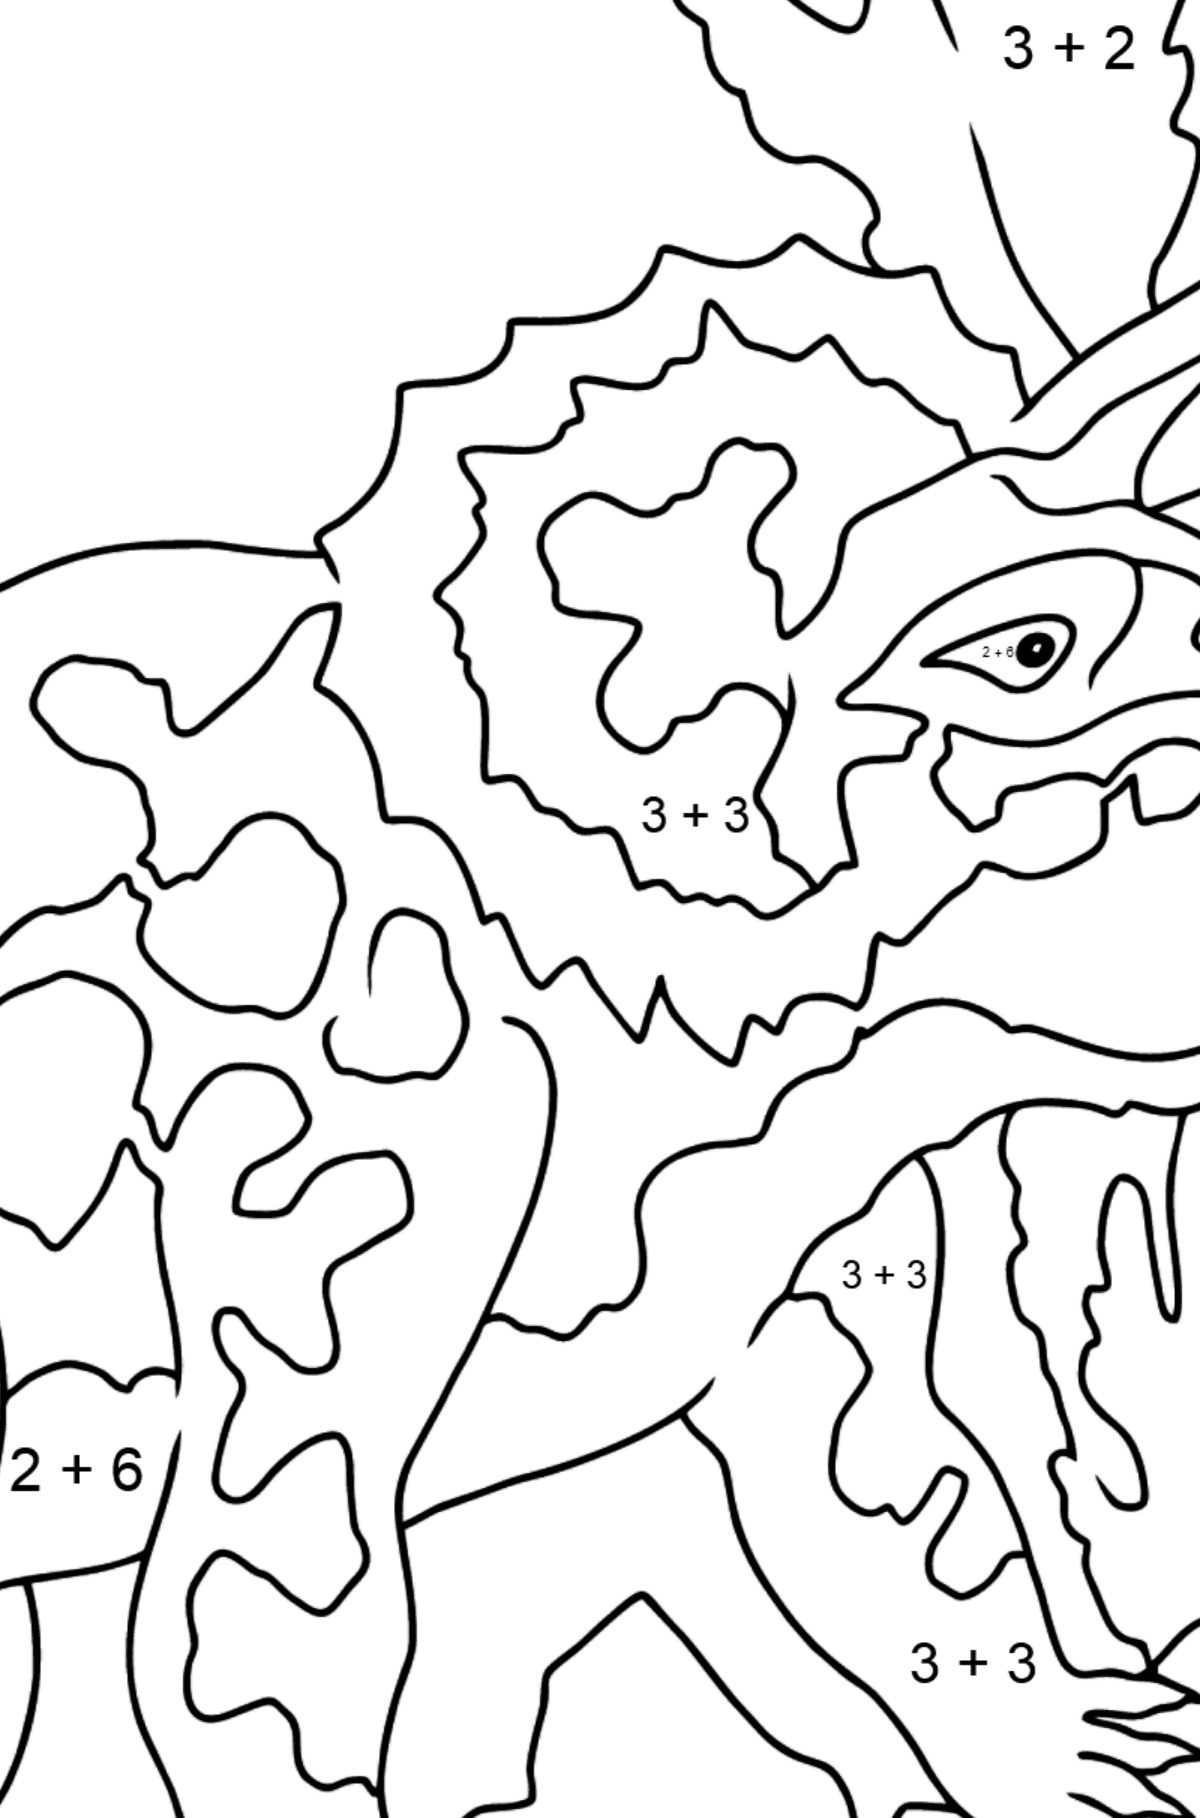 Tegning til fargelegging triceratops (enkelt) - Matematisk fargeleggingsside - addisjon for barn